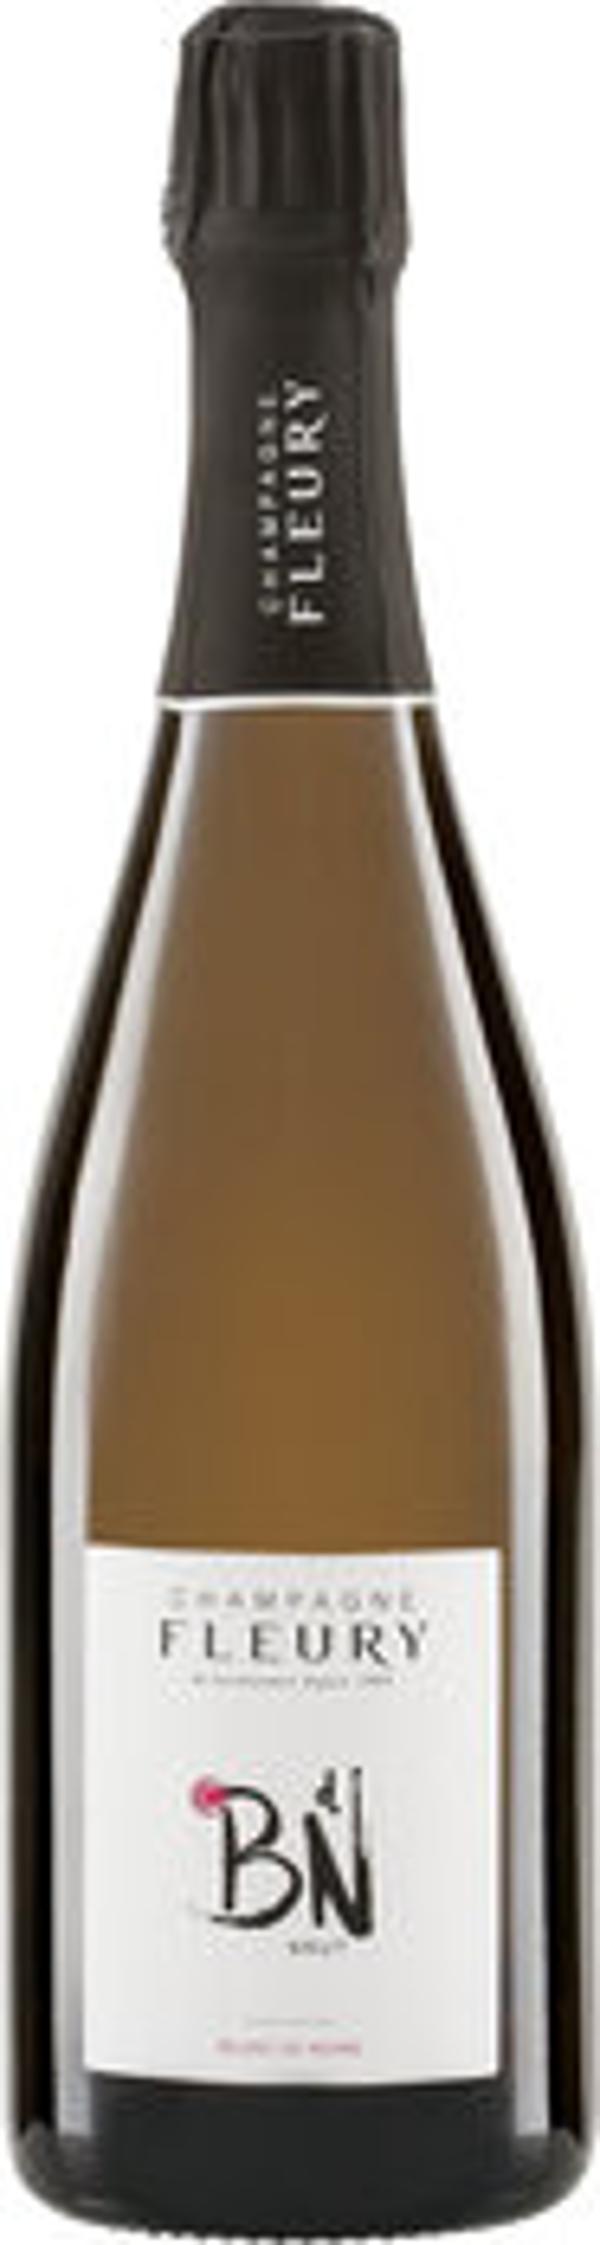 Produktfoto zu VPE Champagne Brut Carte Rouge 6x0,75 l